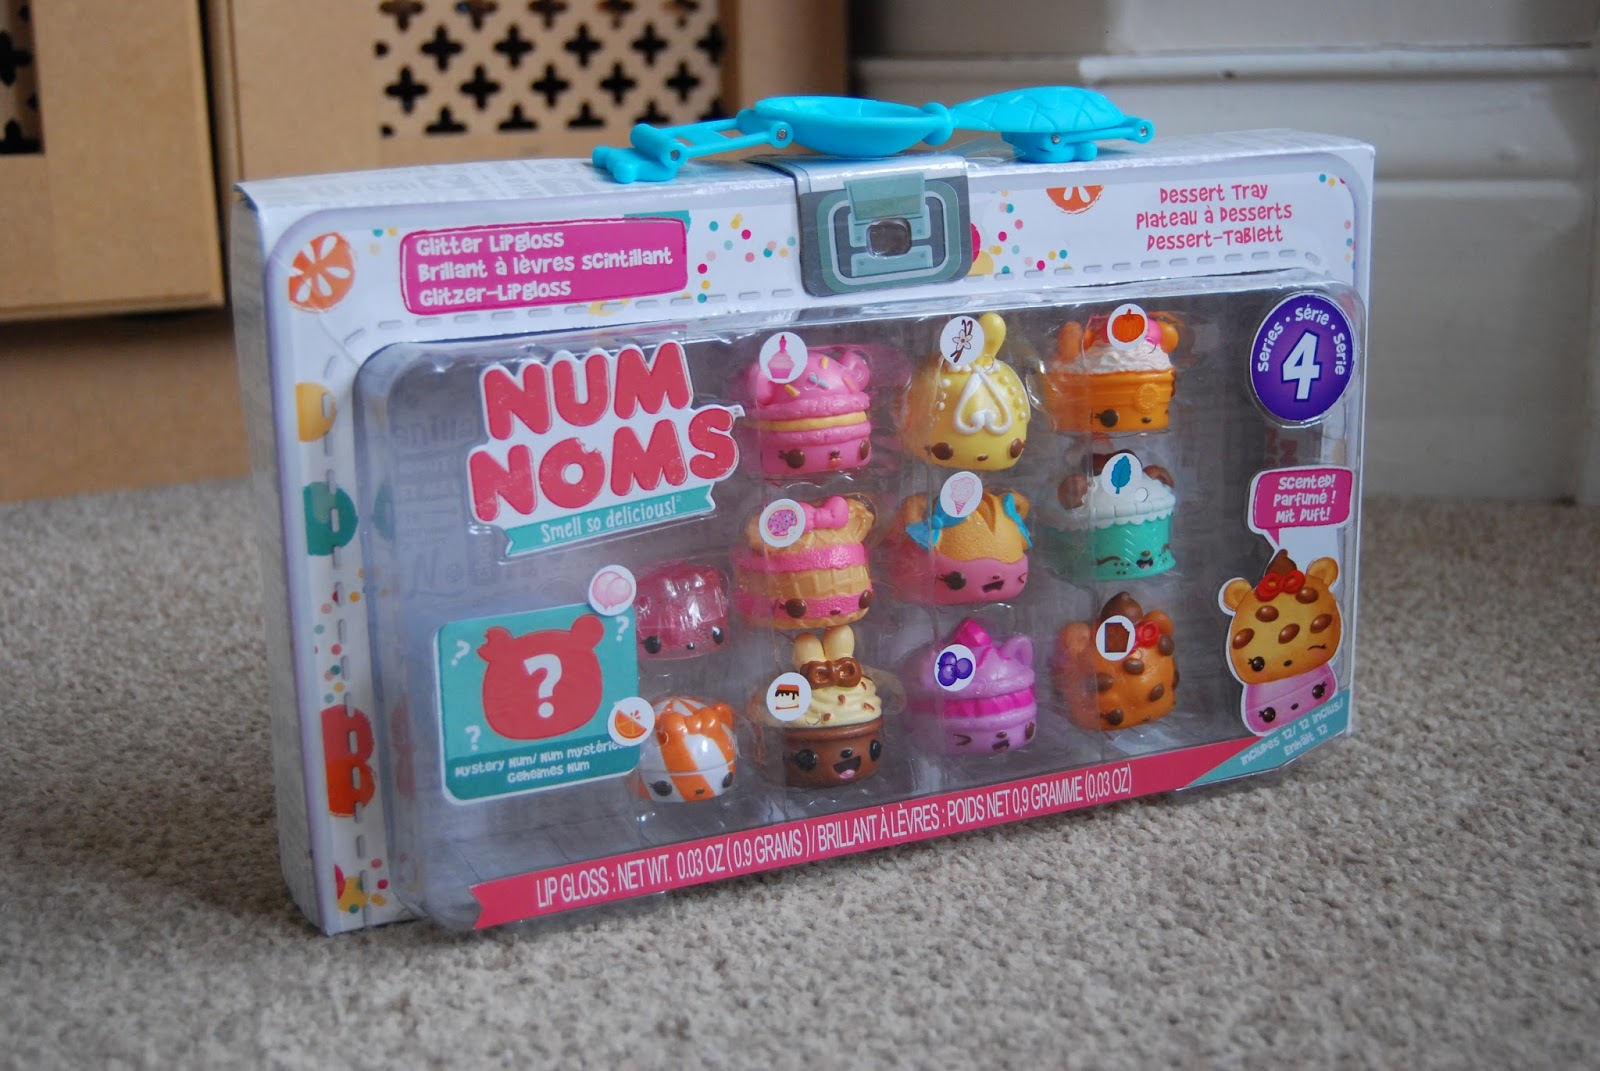 Num Noms Toy Review